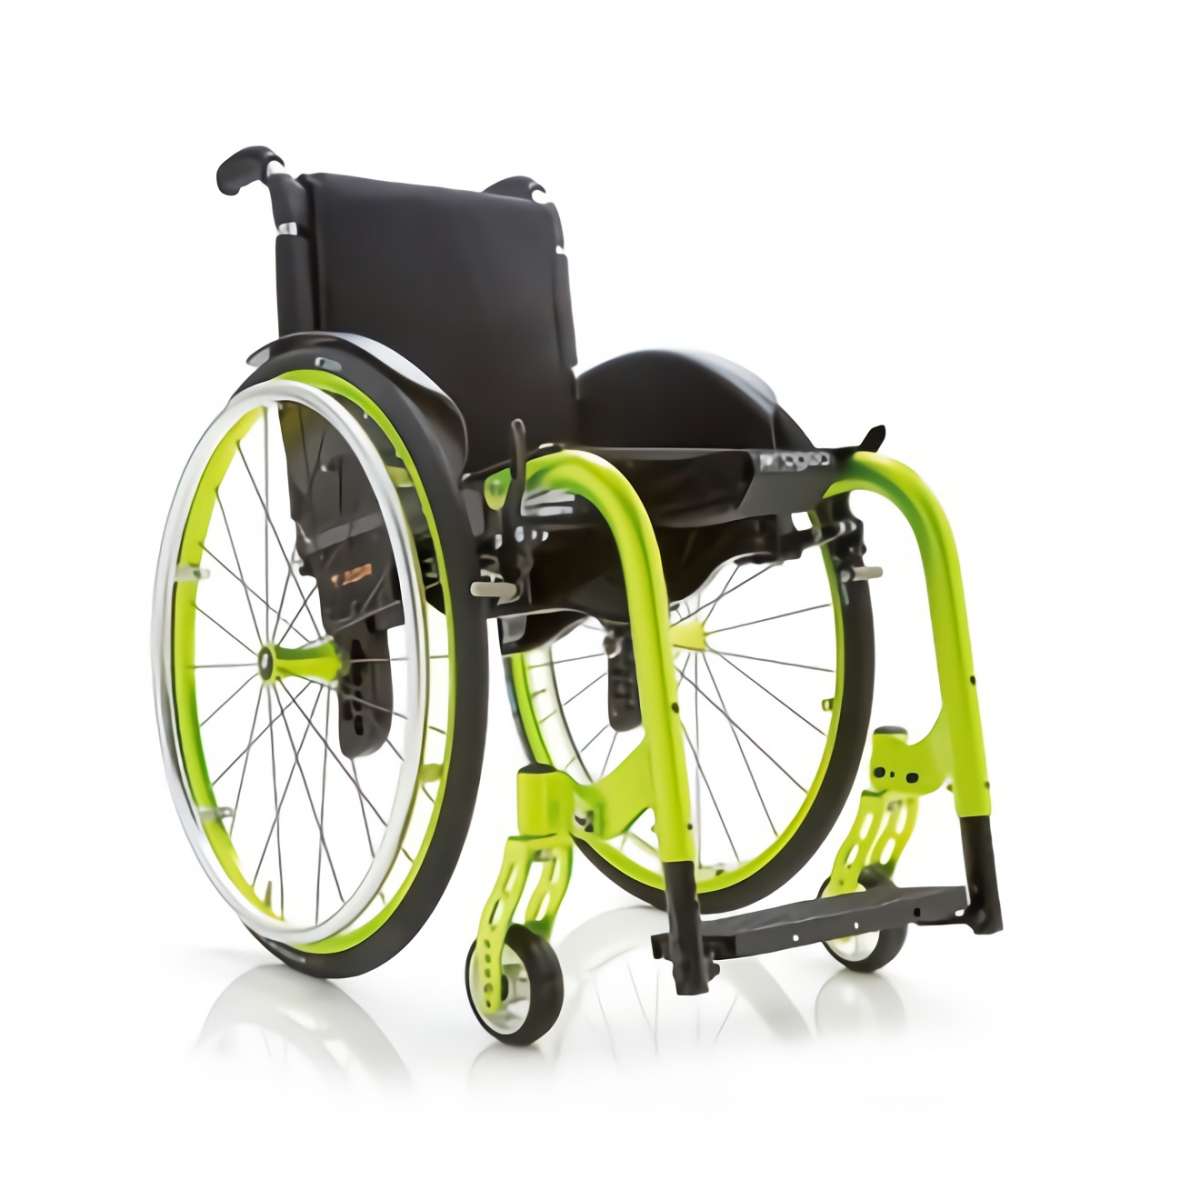 Инвалидная кресло-коляска активного типа Smart F